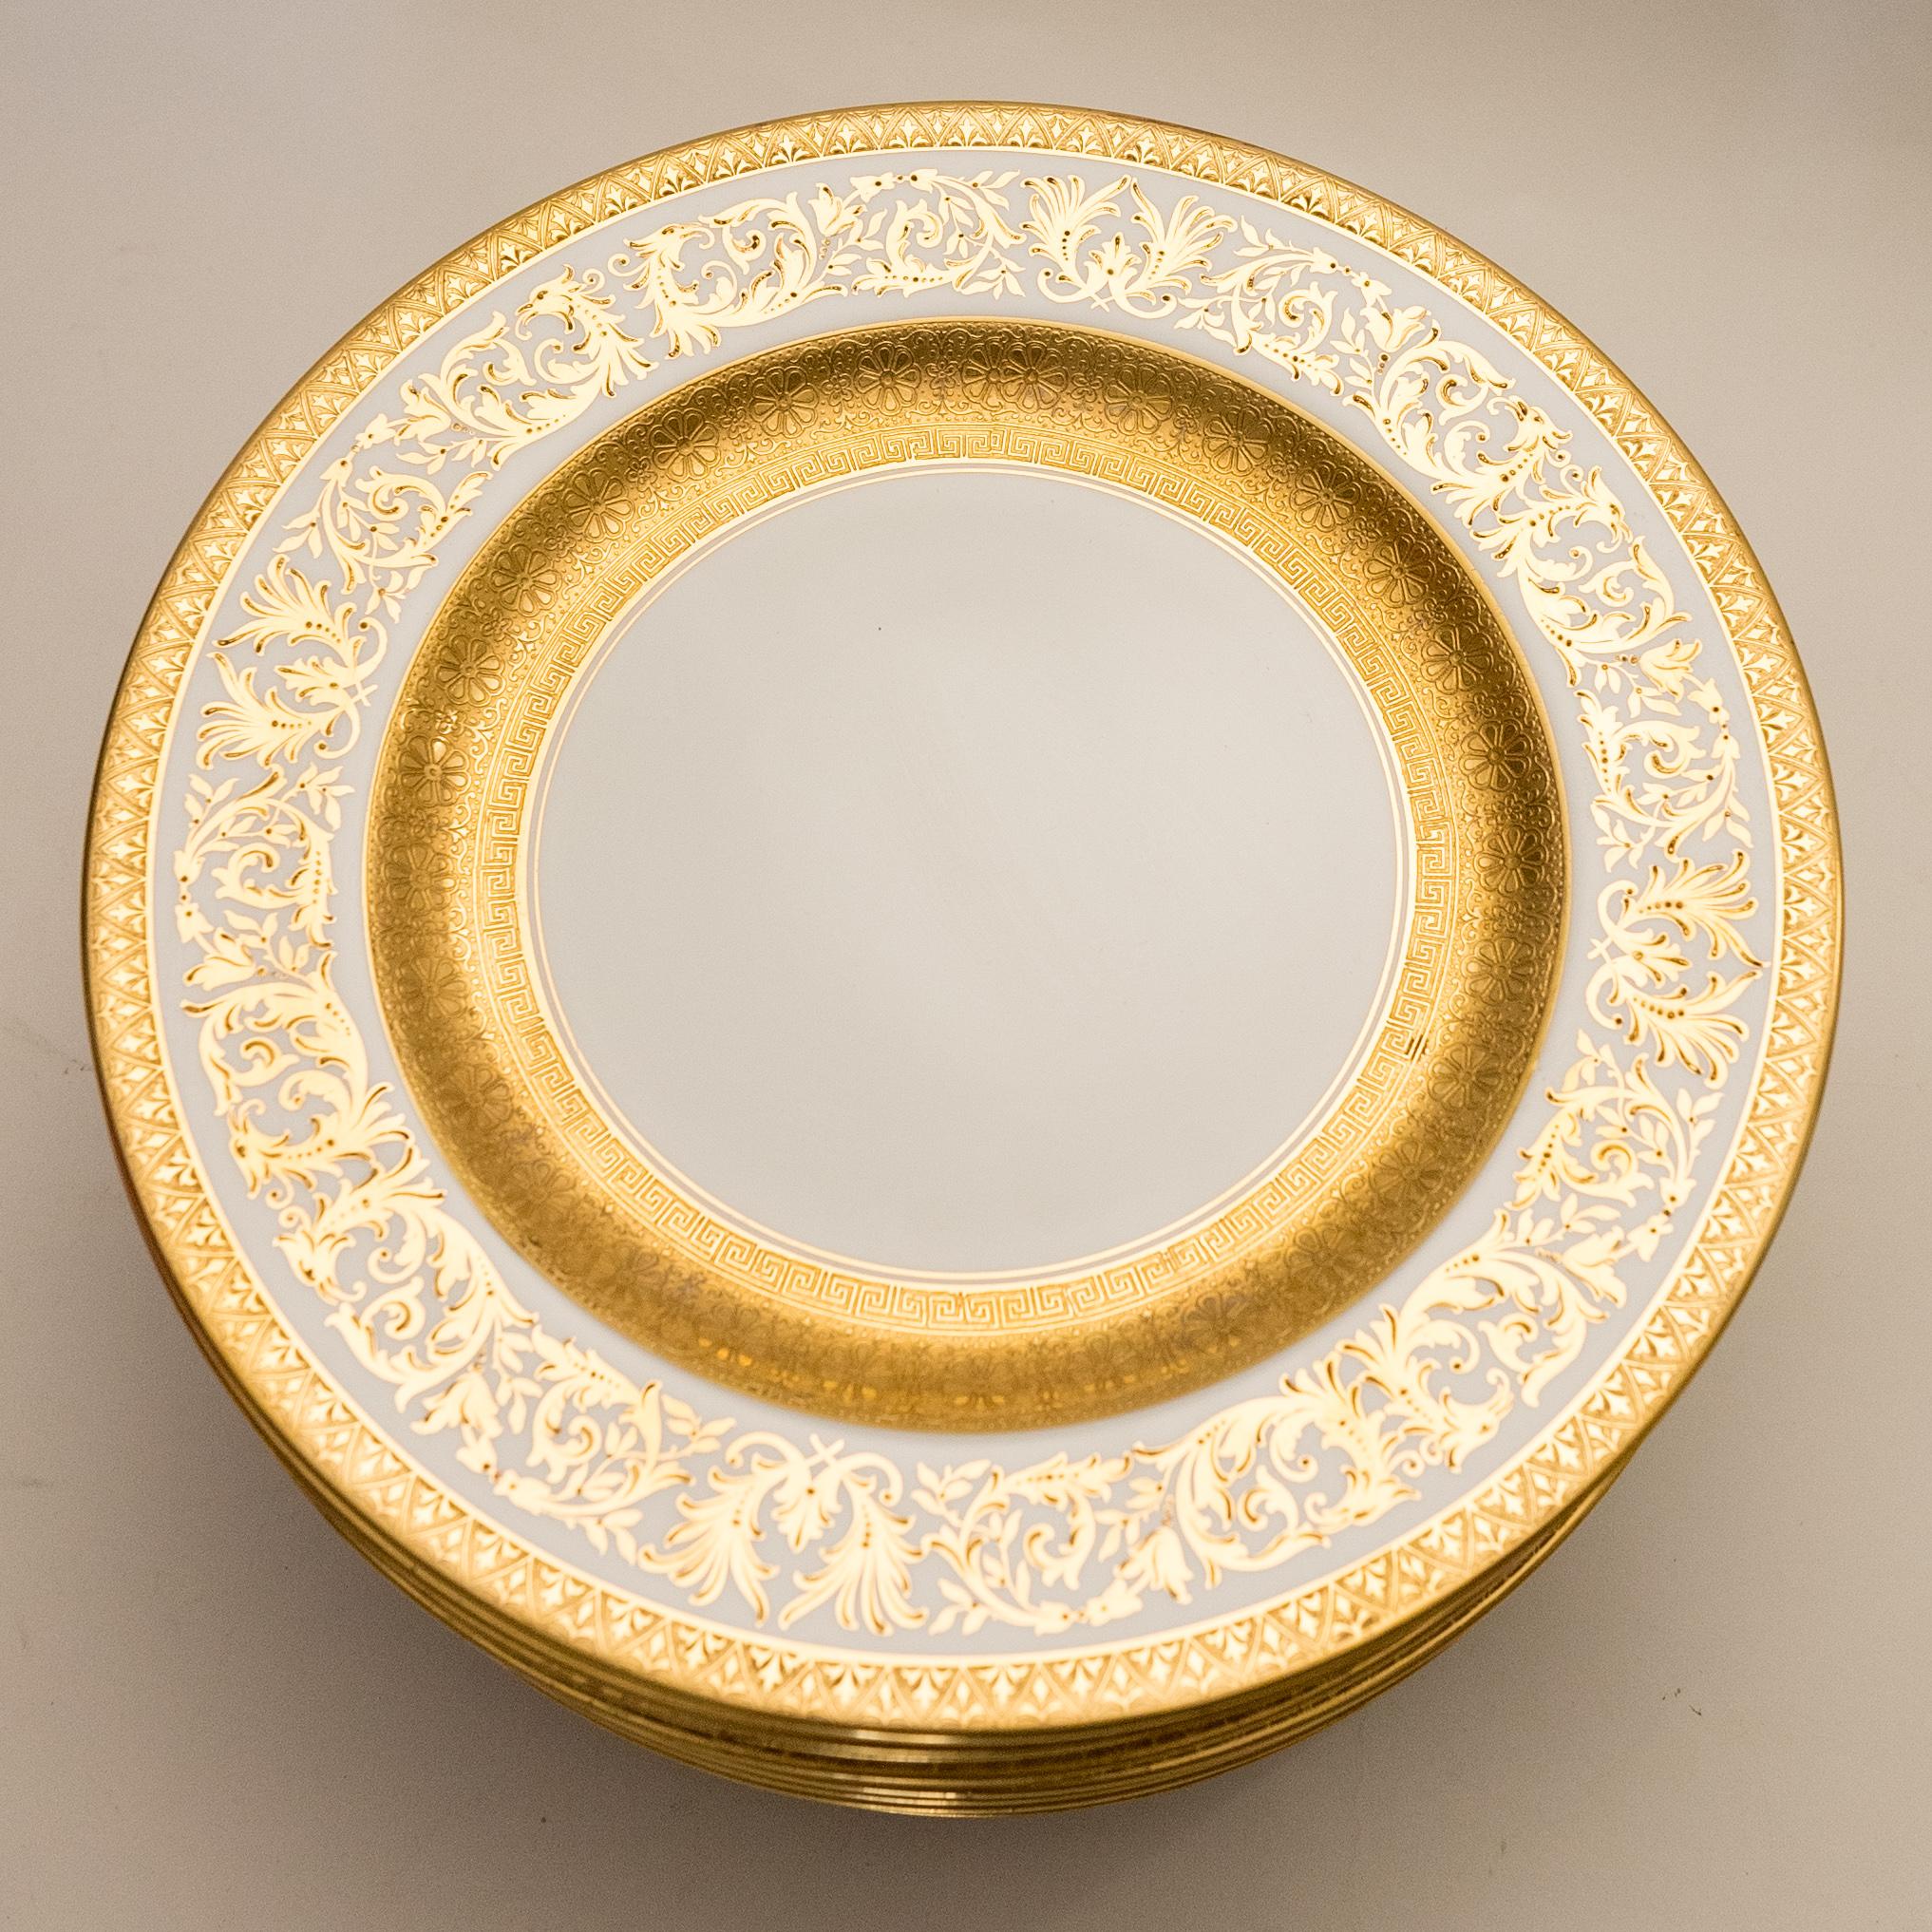 11 vergoldete, verzierte Essteller, antike, maßgefertigte Bestellung mit breiter Goldbordüre (Frühes 20. Jahrhundert)